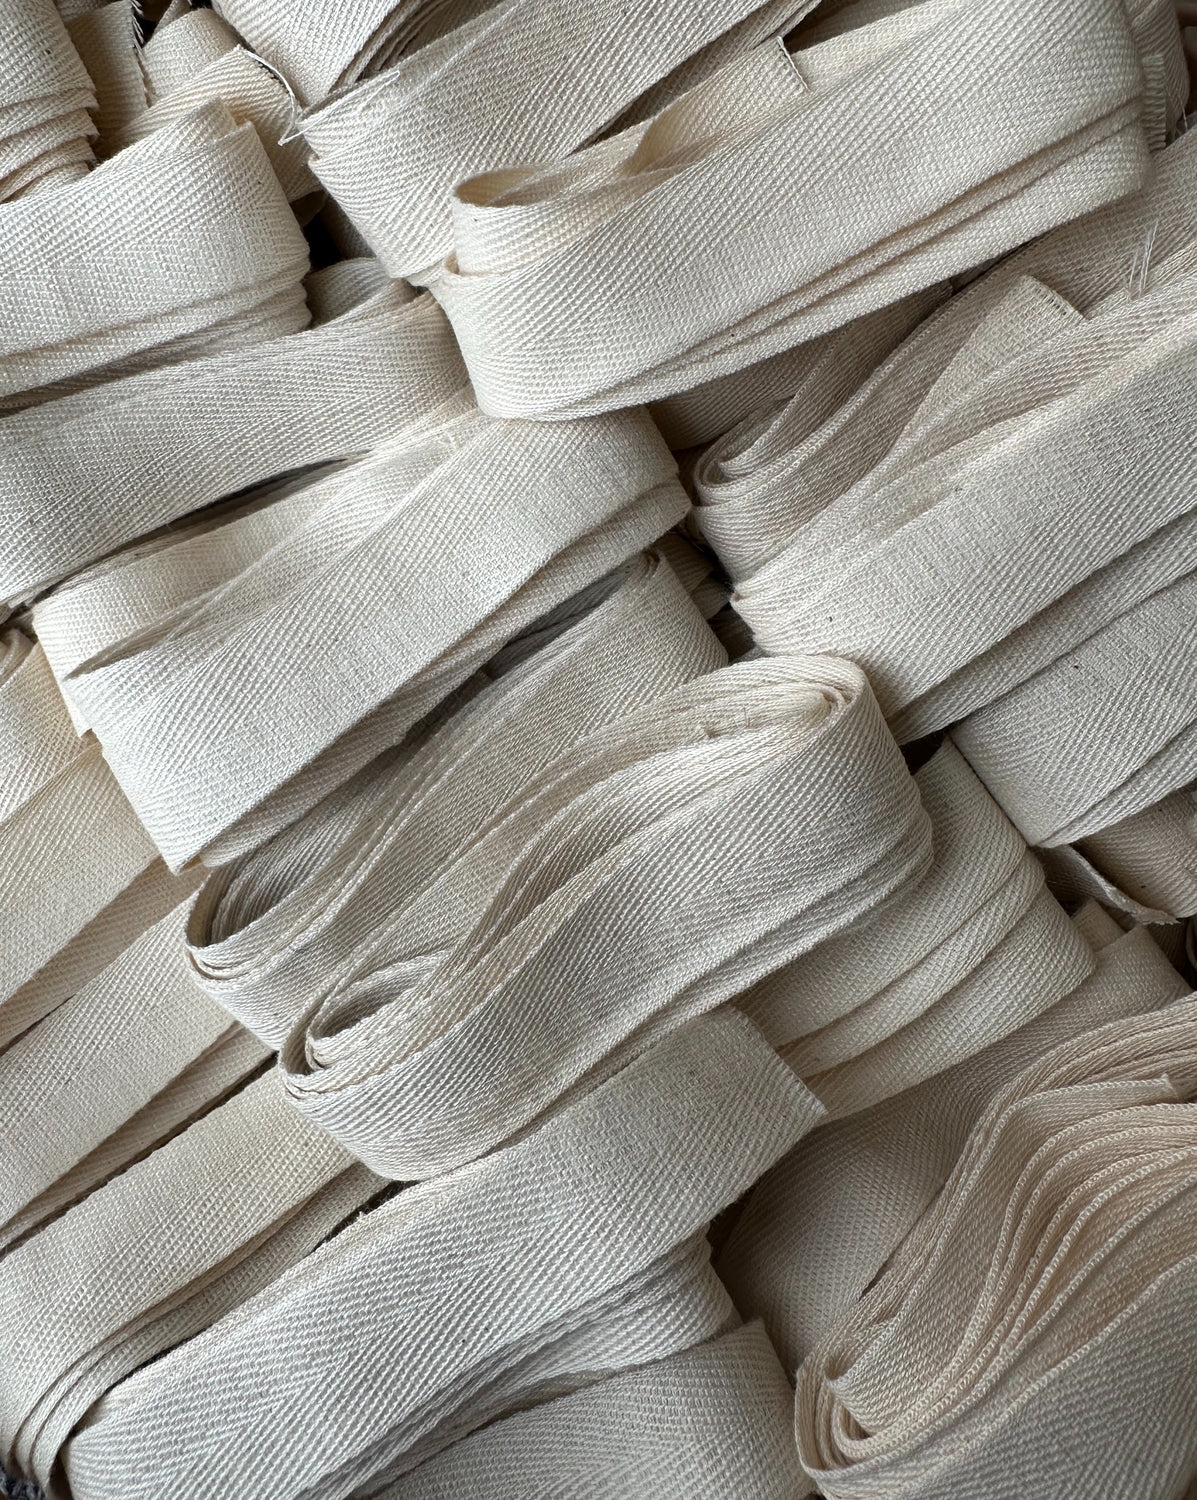 Baumwollband für die Breeze Bag (Bio-Baumwolle)